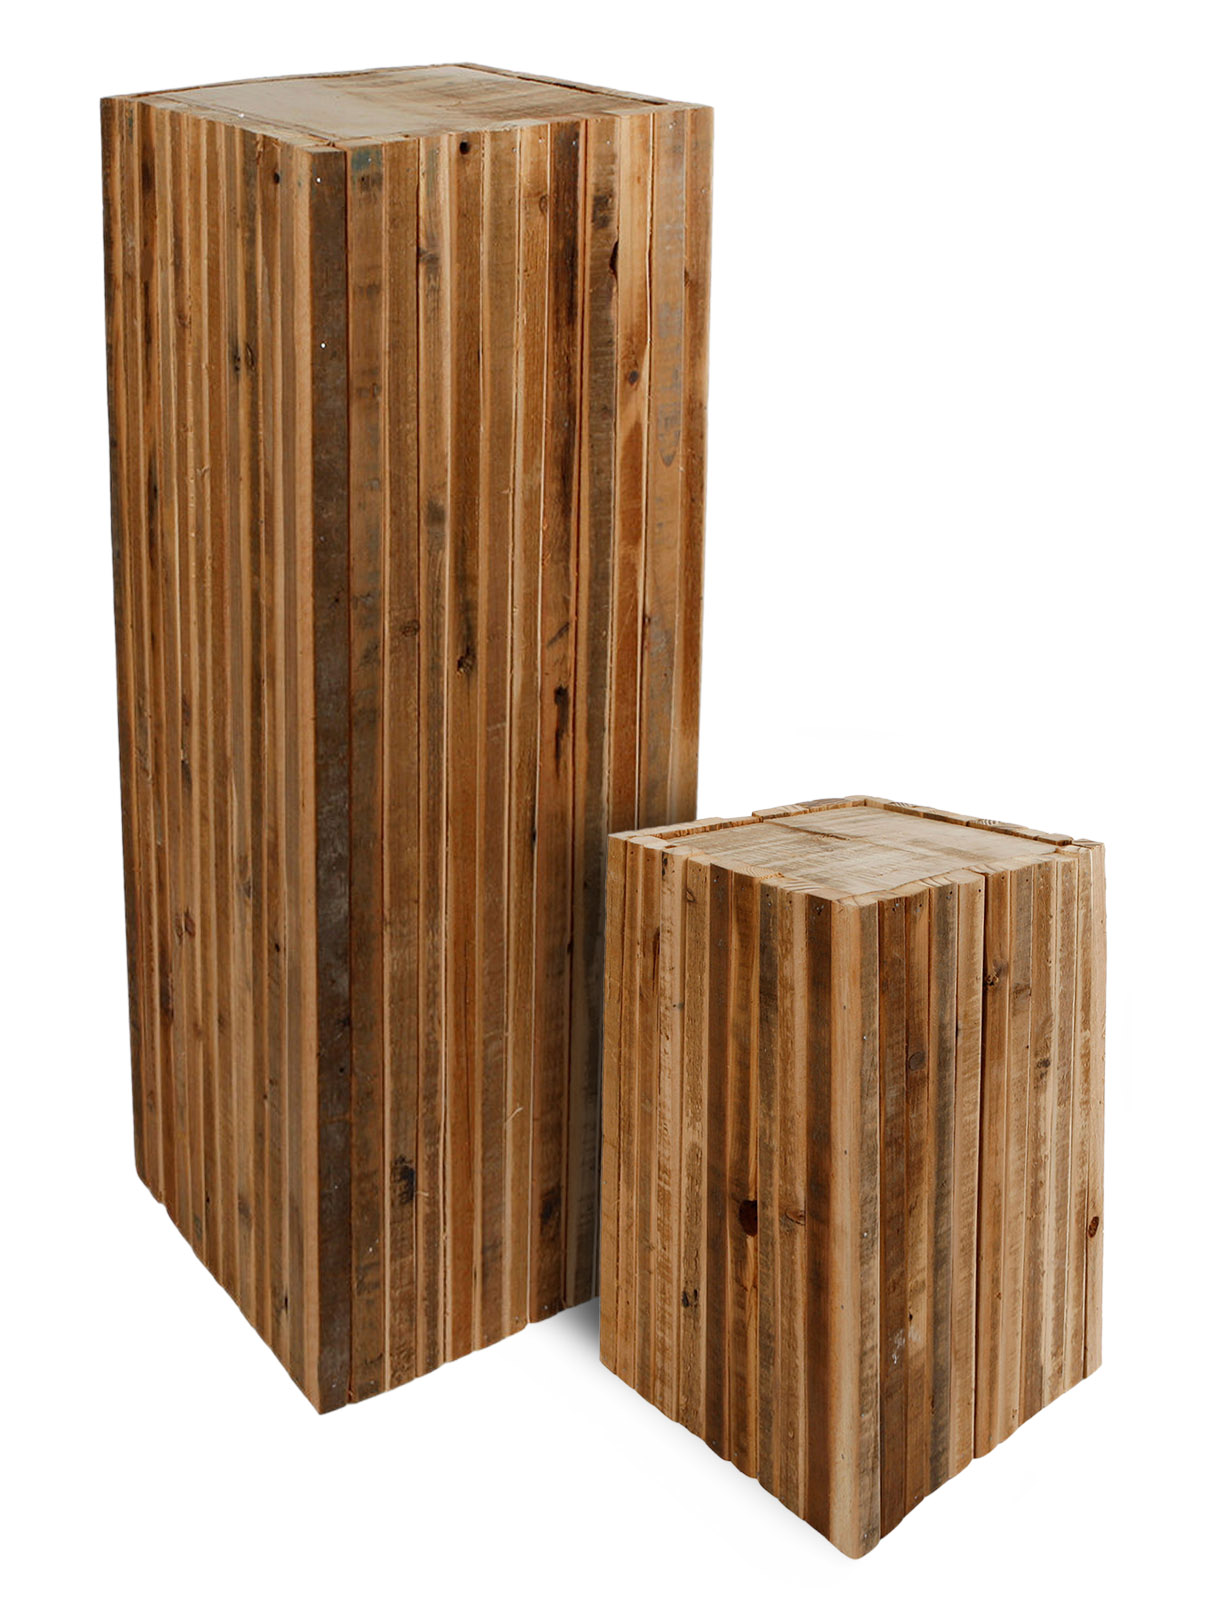  Holz Blumenhocker "Leon" - 2 Größen - Deko Pflanzenständer im rustikalen Look 